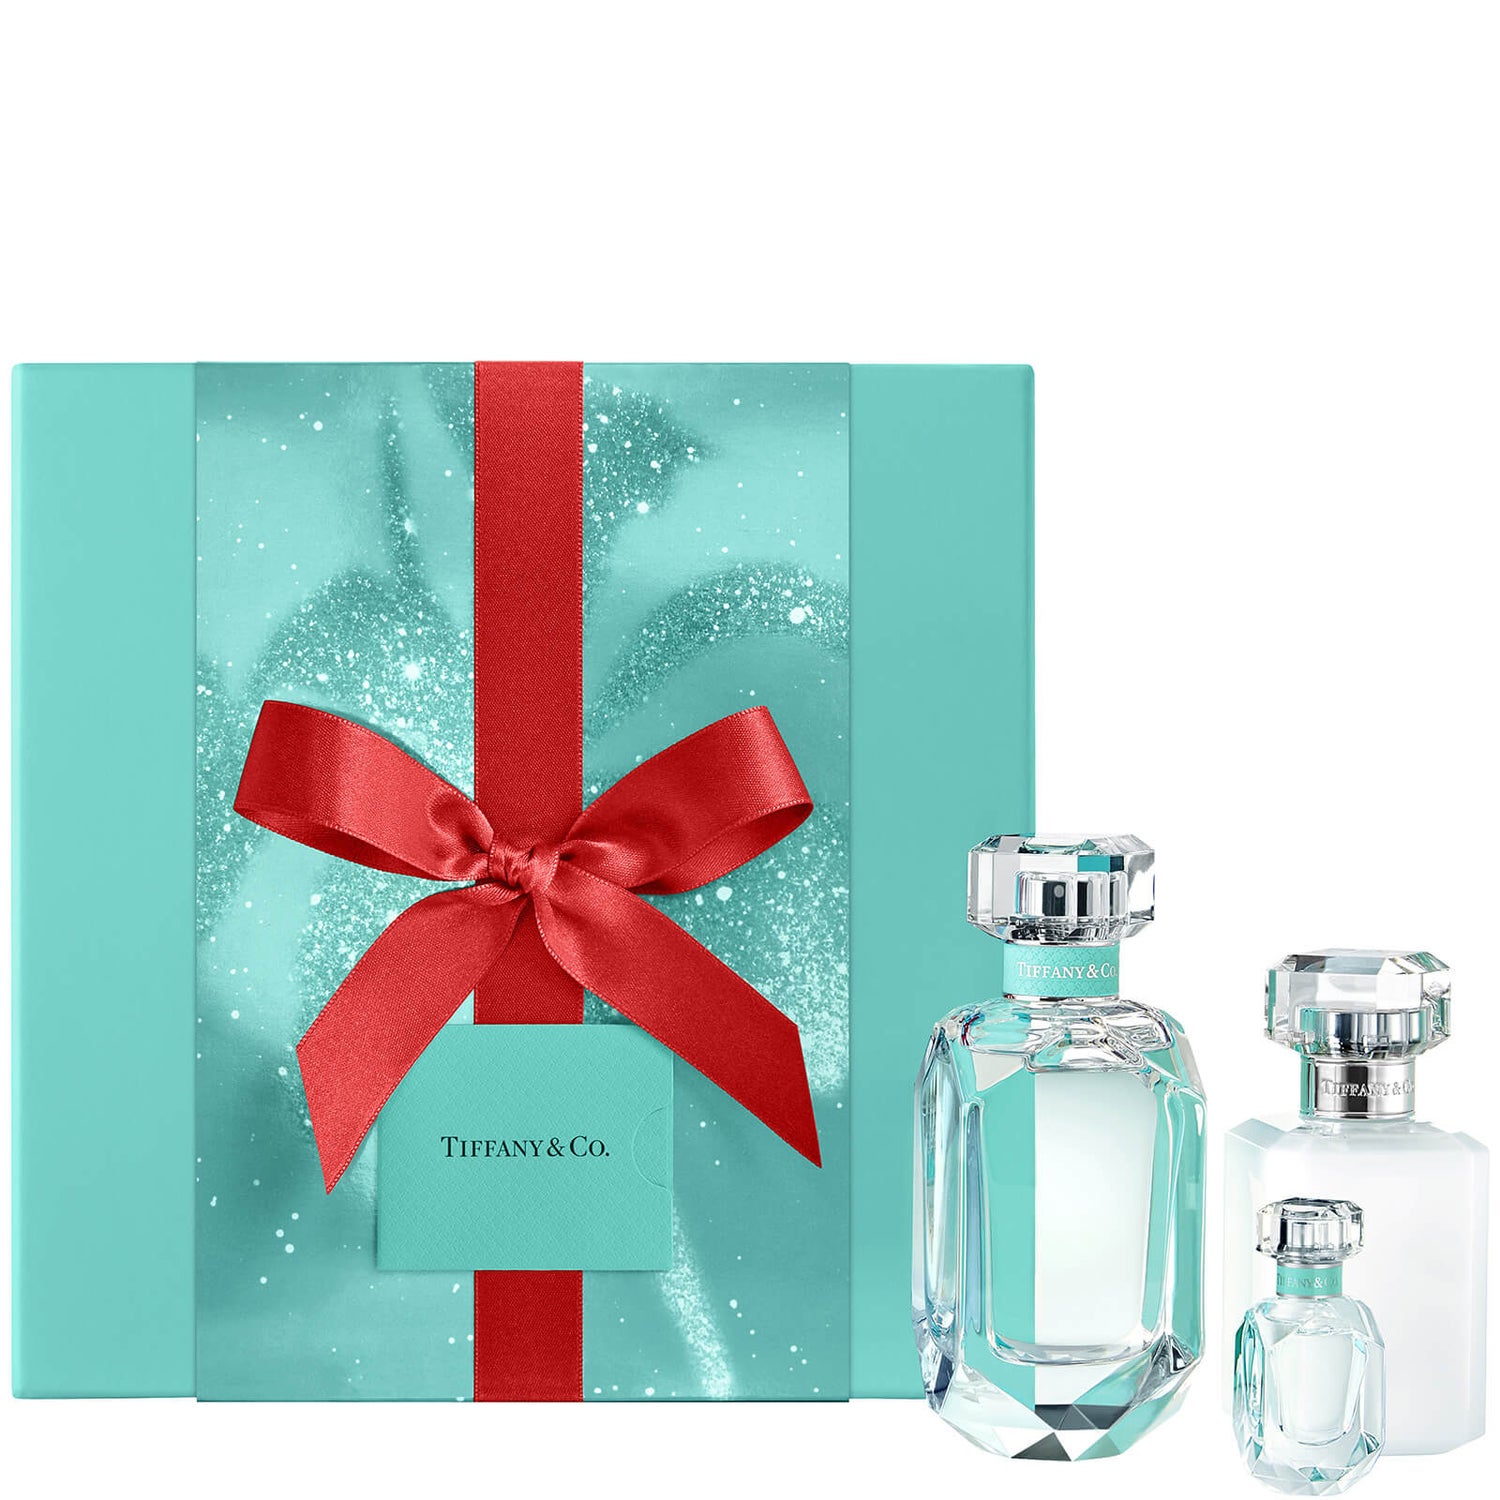 Tiffany & Co. Signature For Her Eau De Parfum 75ml Gift Set